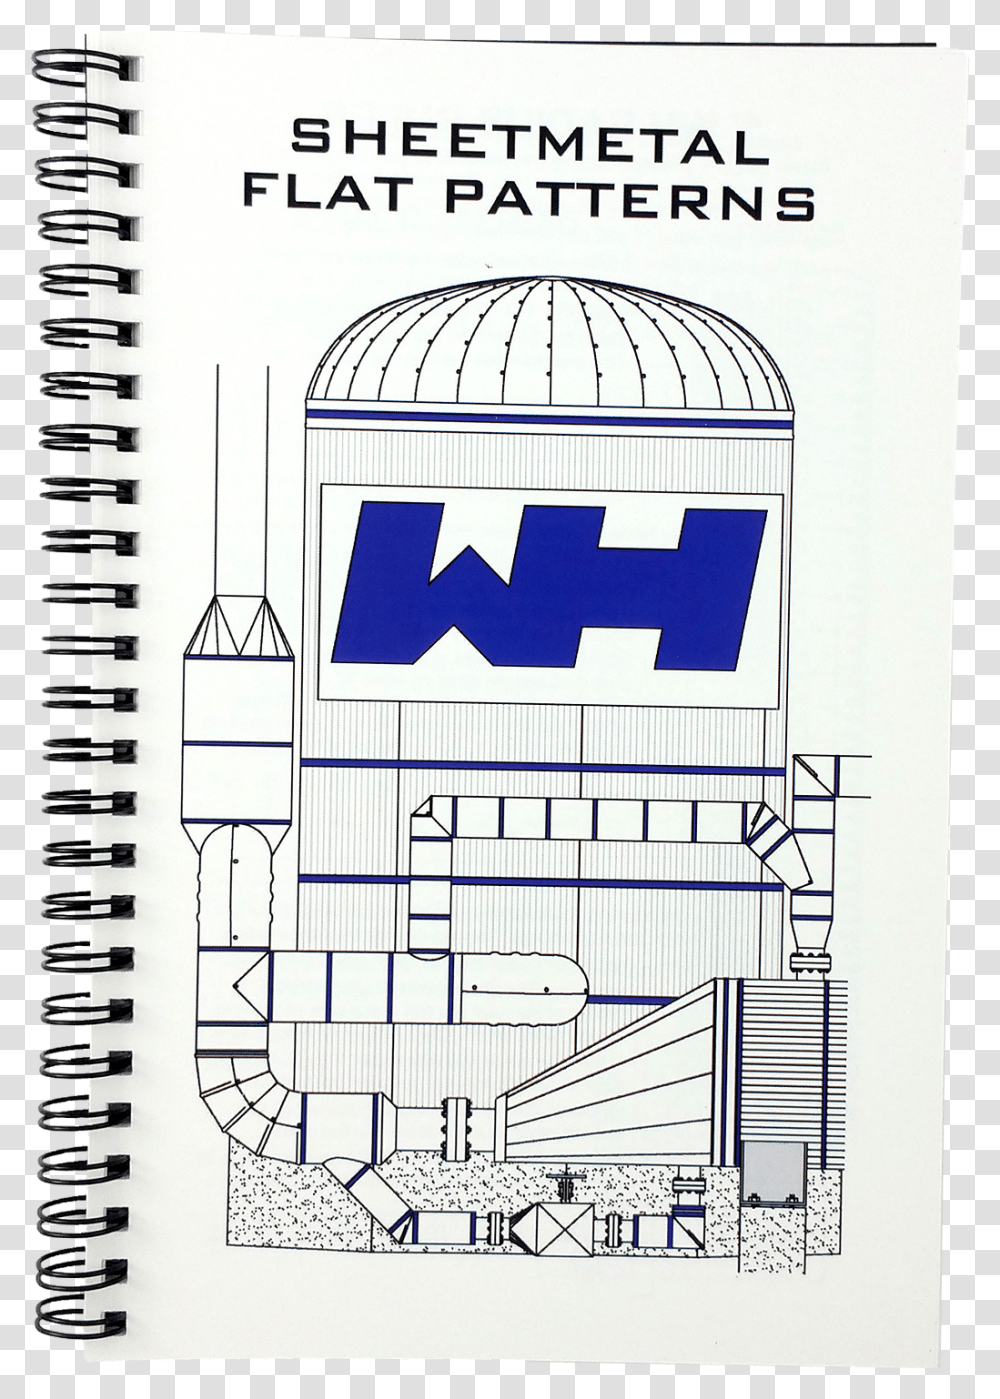 English Pattern Book Flat Metal Patterns, Plan, Plot, Diagram Transparent Png